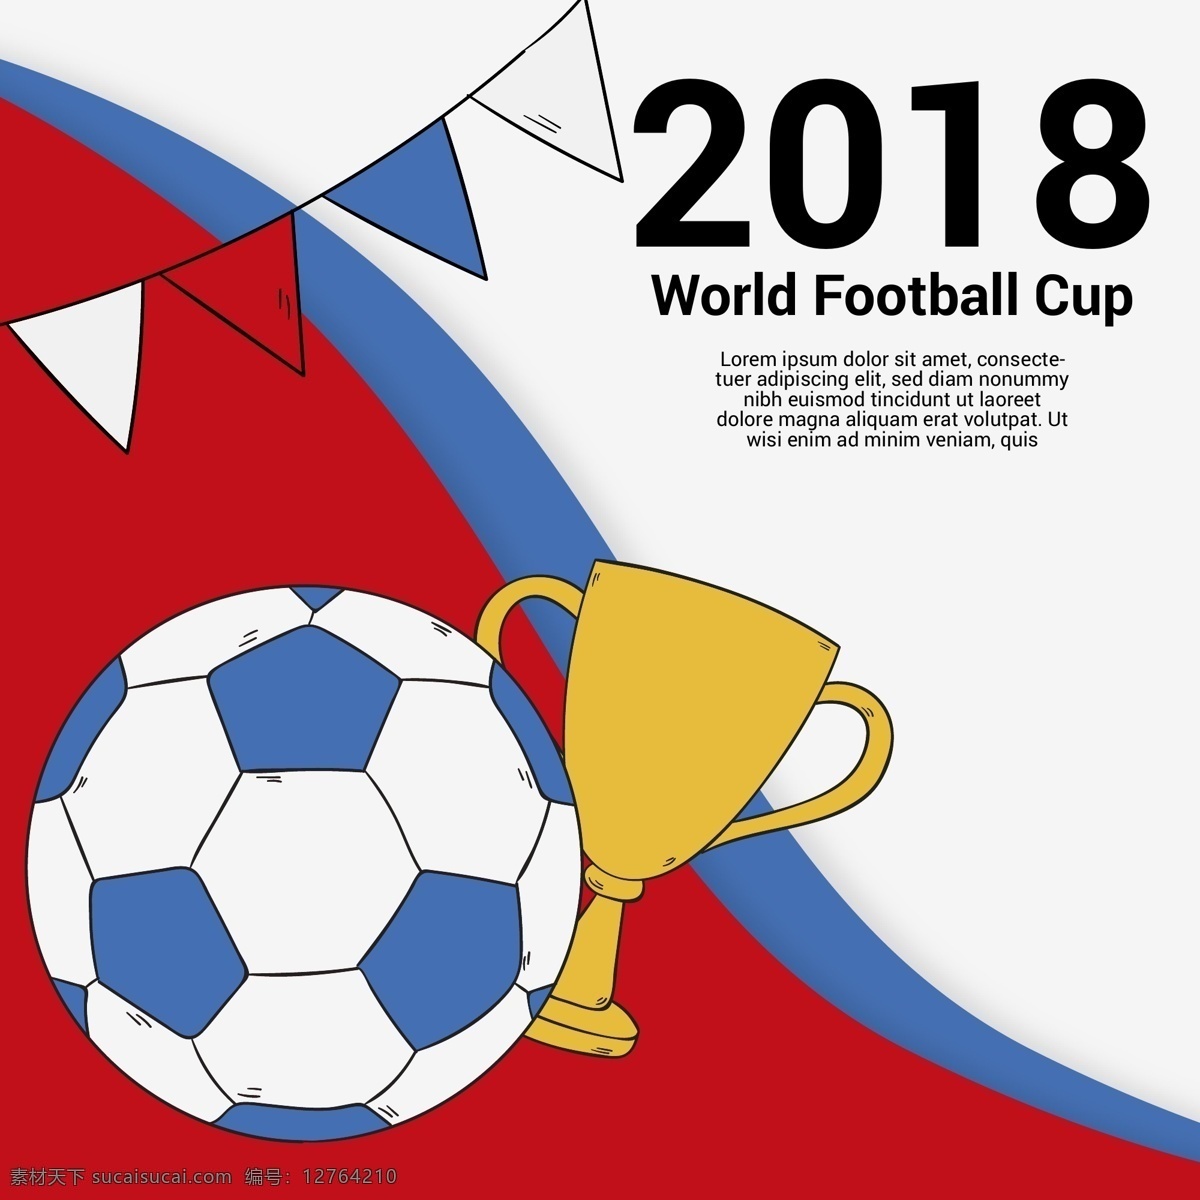 2018 世界杯 足球比赛 足球 足球设计 足球矢量图